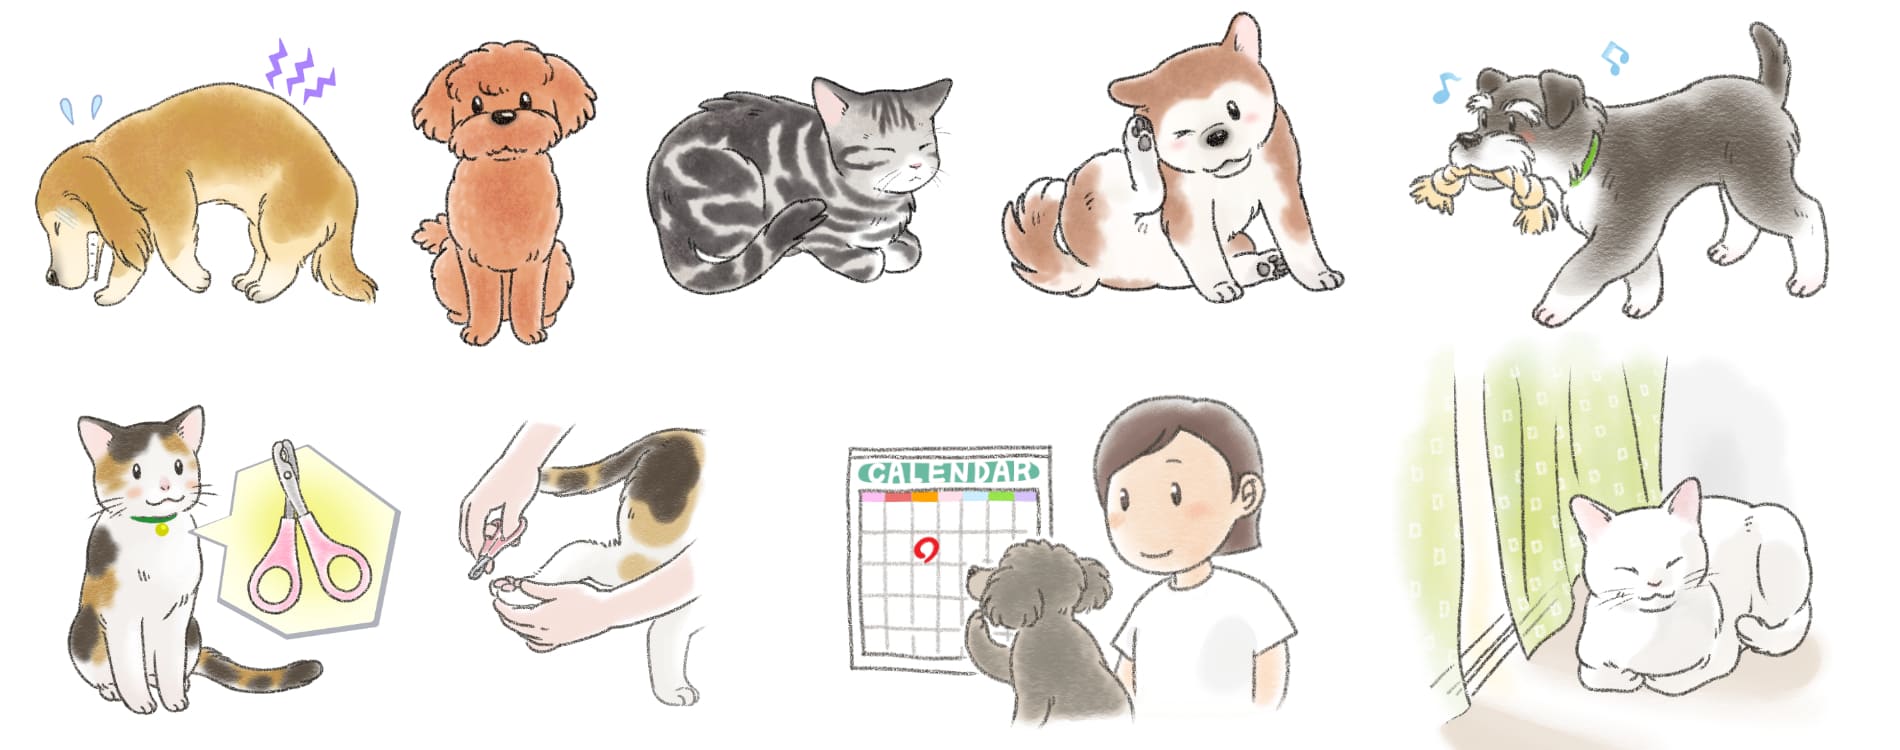 ペットの犬や猫、動物のイラスト、挿絵